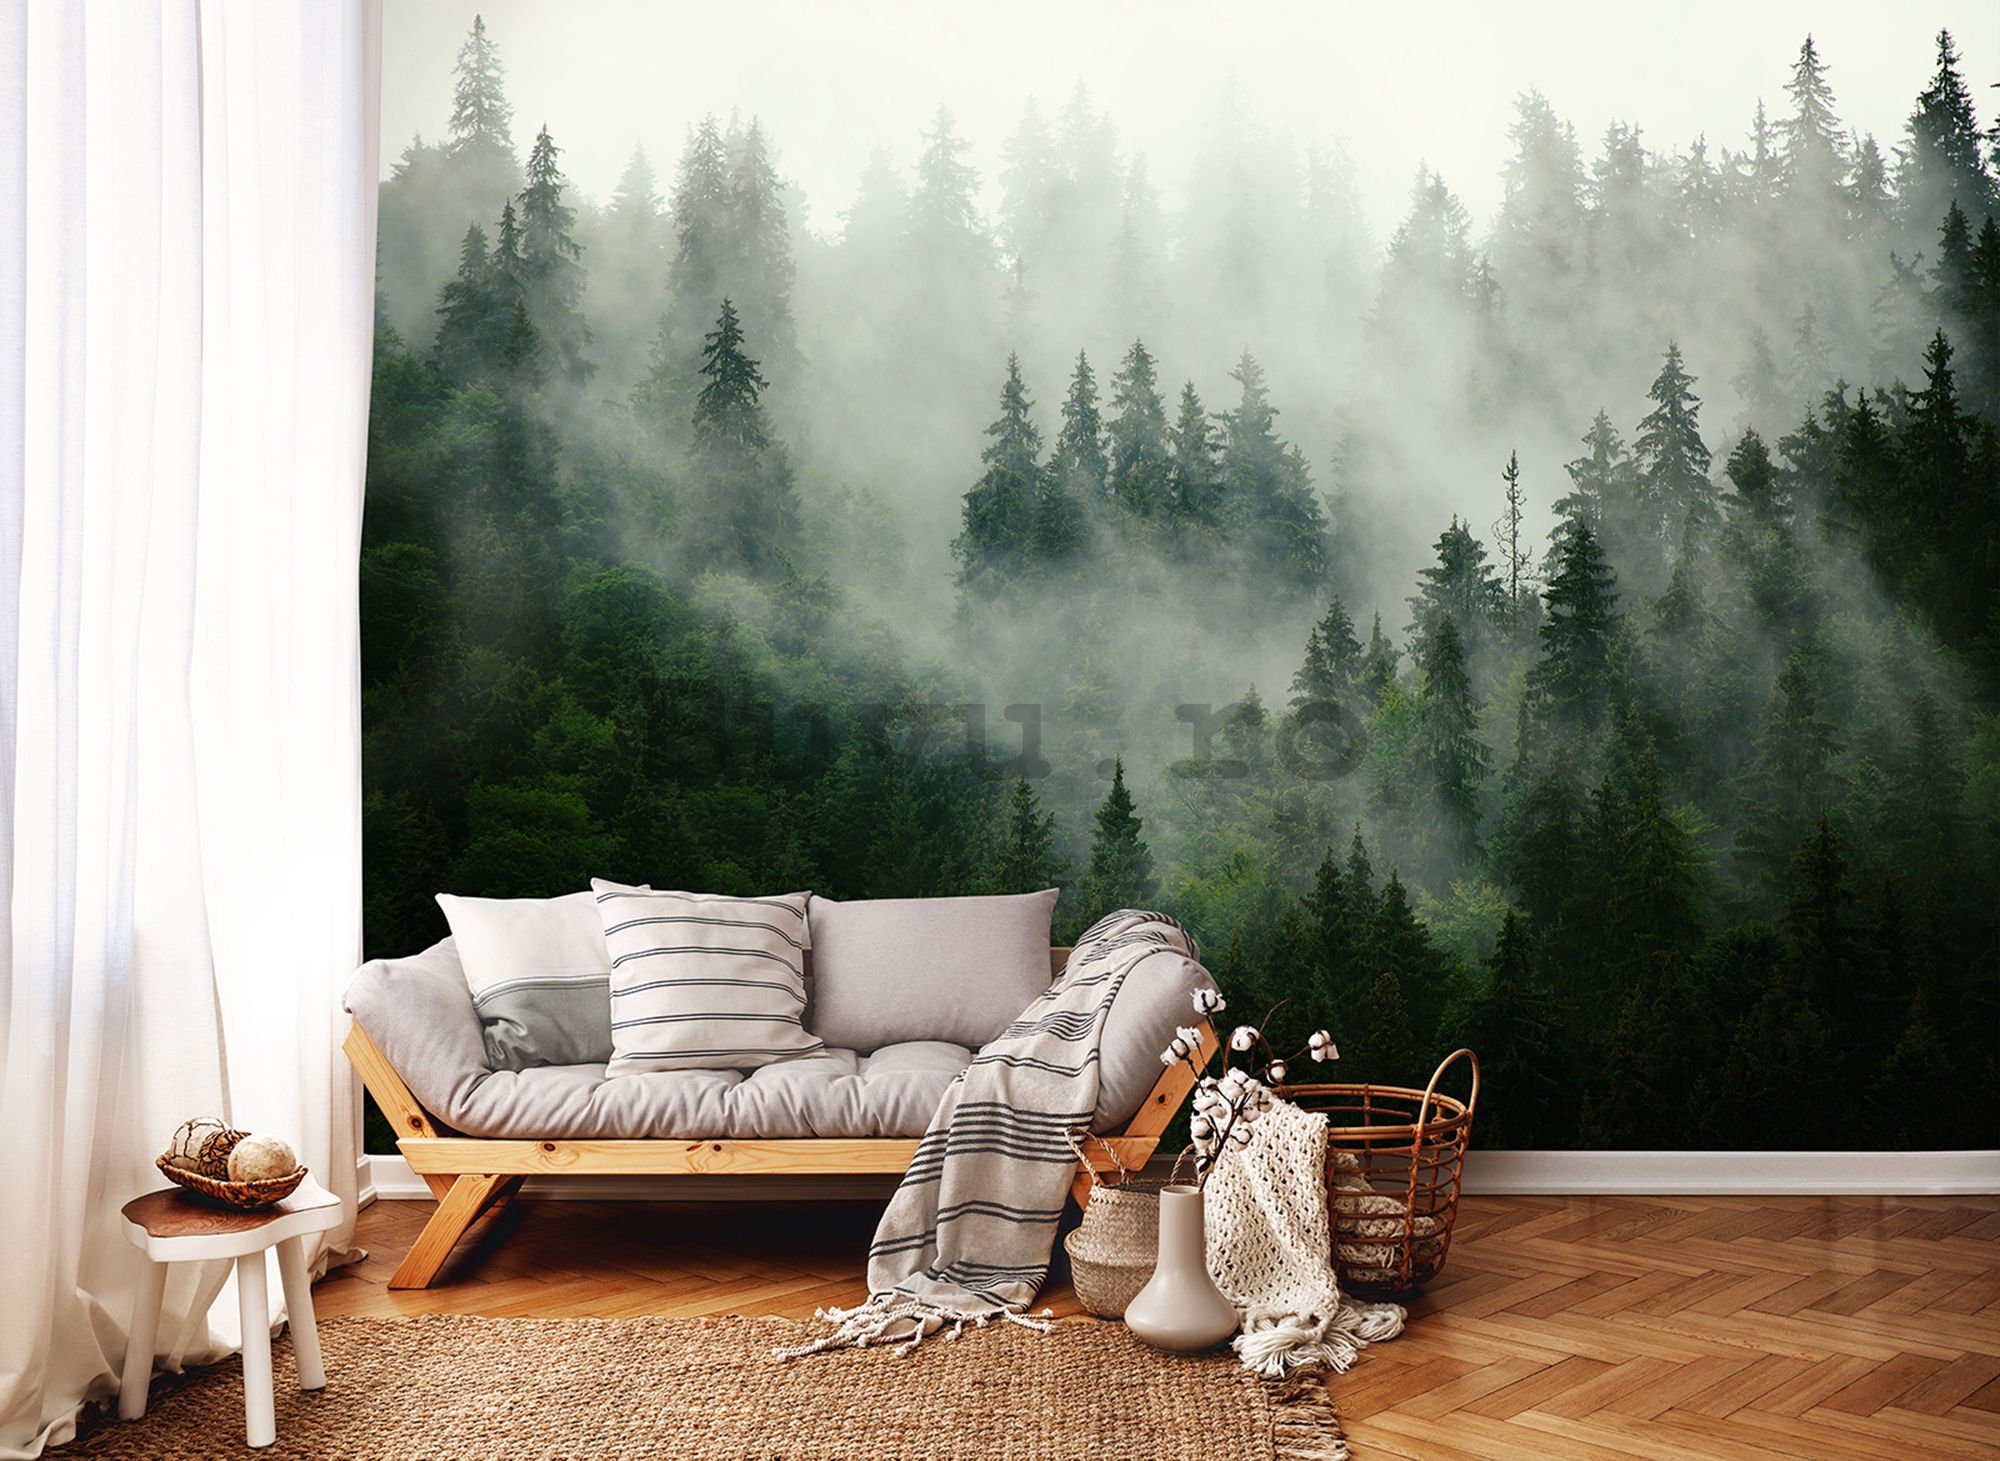 Fototapet: Ceață peste pădure (1) - 254x368 cm